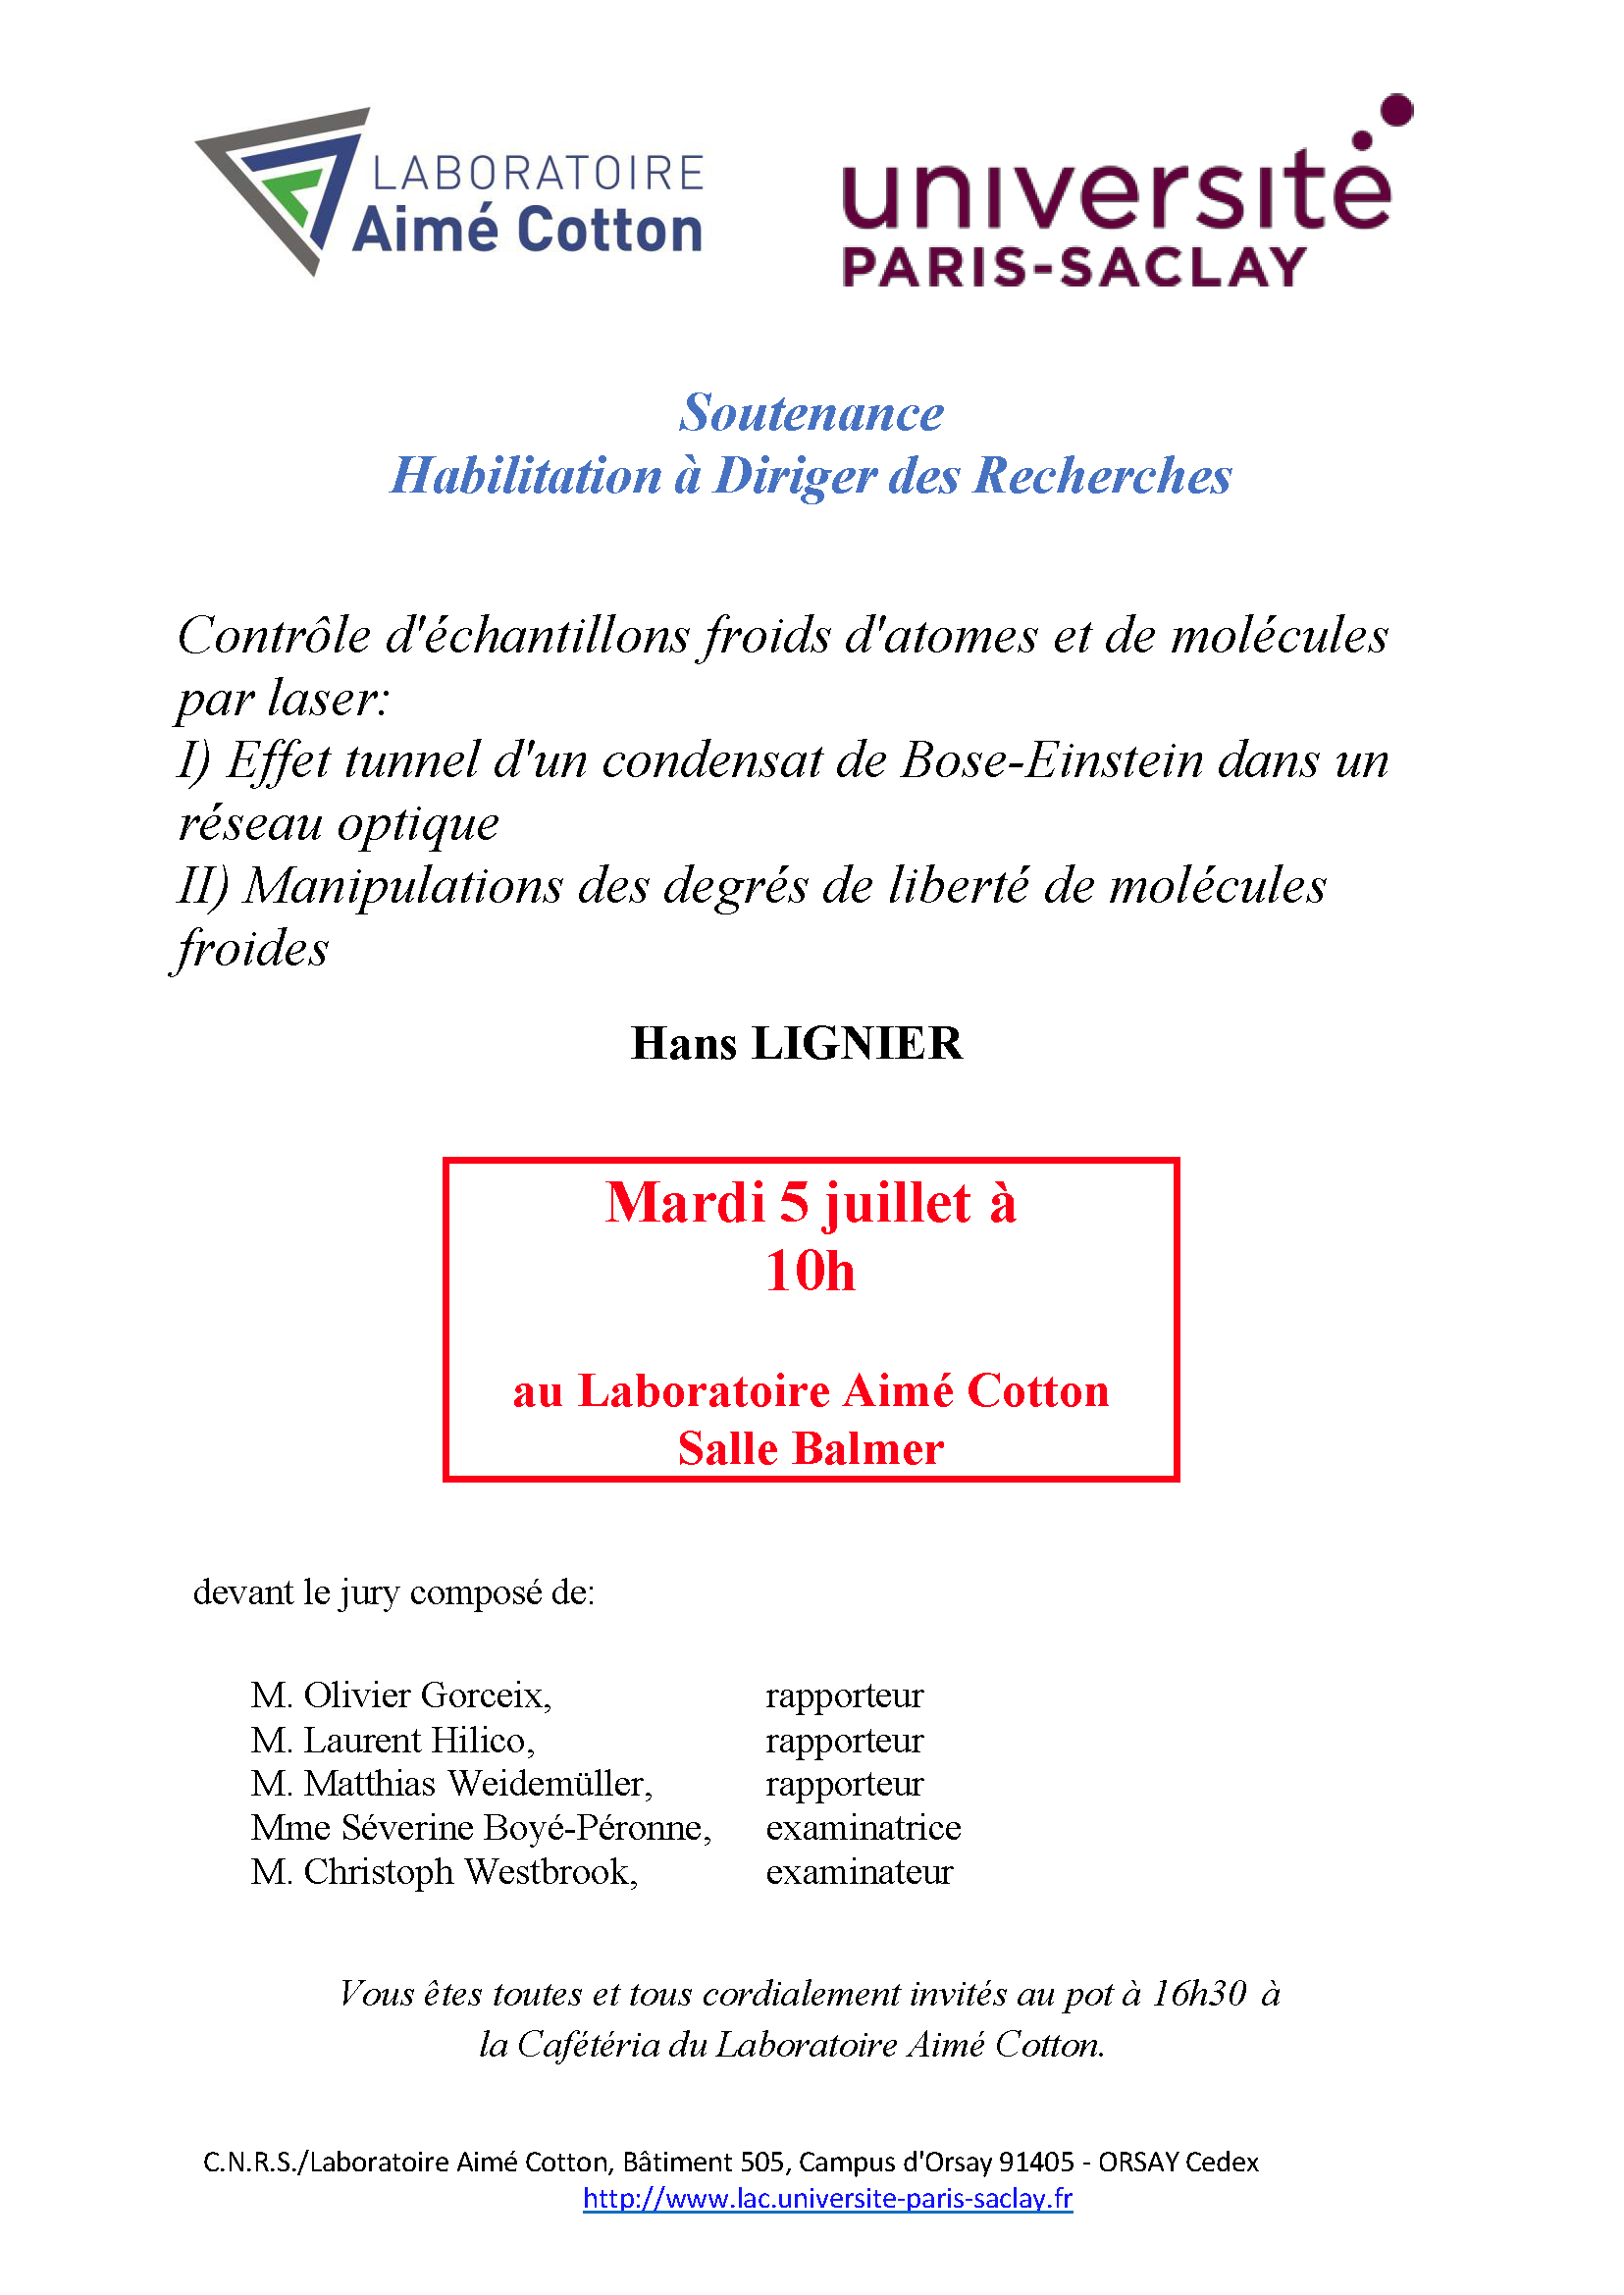 Soutenance HDR (Habilitation defense), Hans Lignier, mardi 5 juillet 10h au laboratoire Aimé Cotton